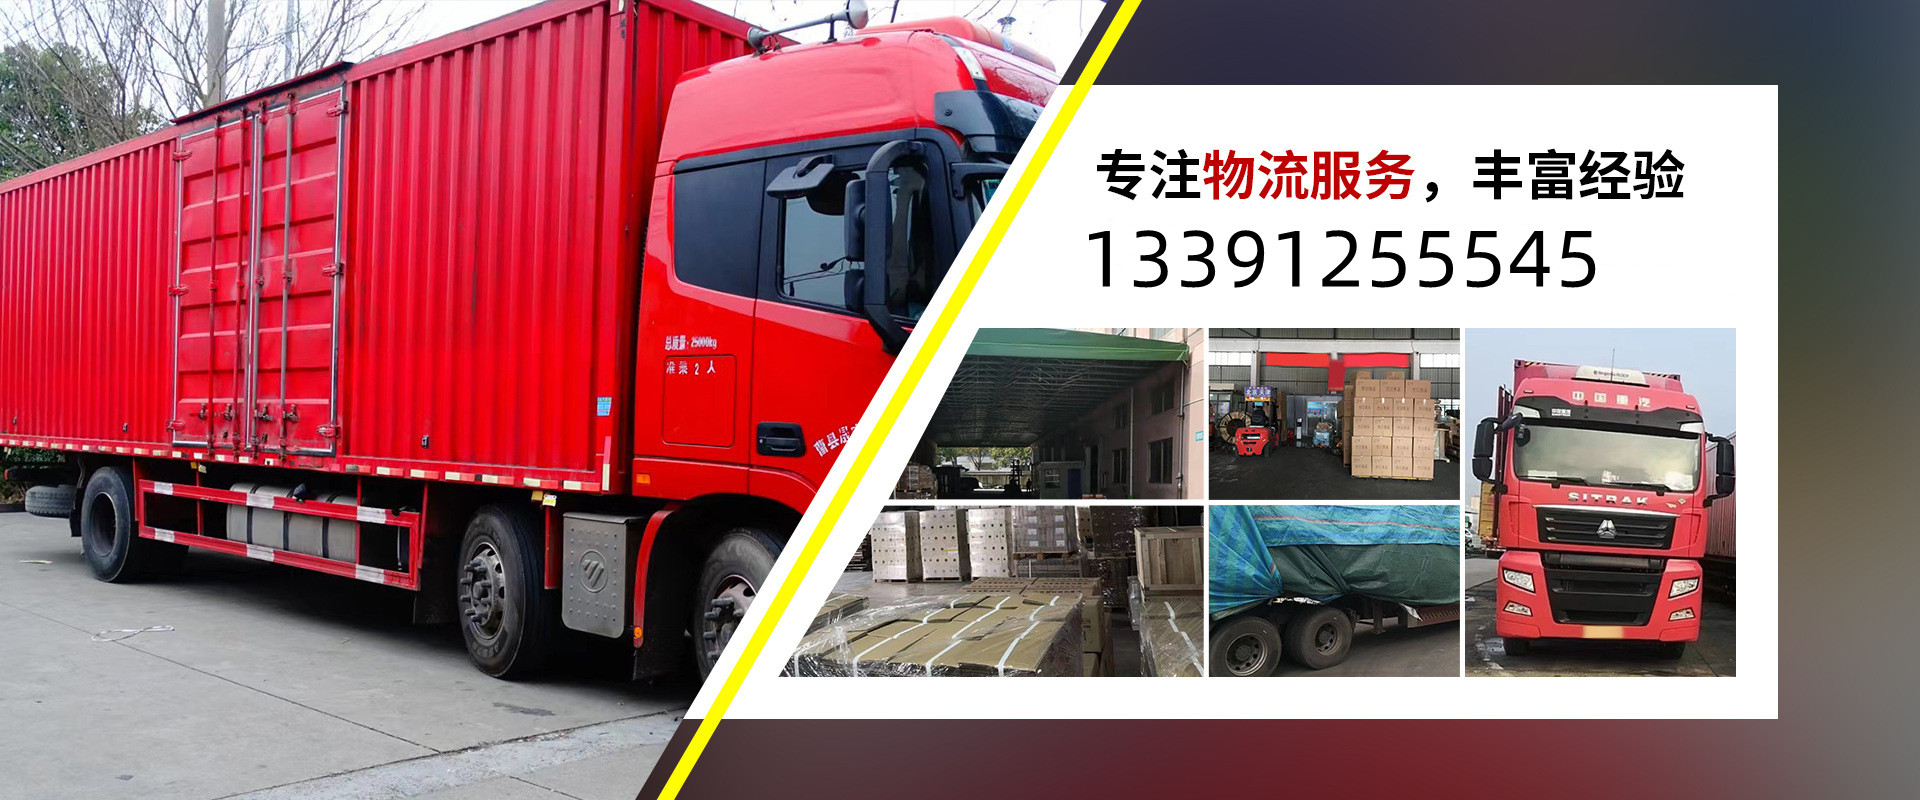 上海到四平冷藏货运公司、本地上海到四平冷藏货运公司、、上海到四平冷藏货运公司